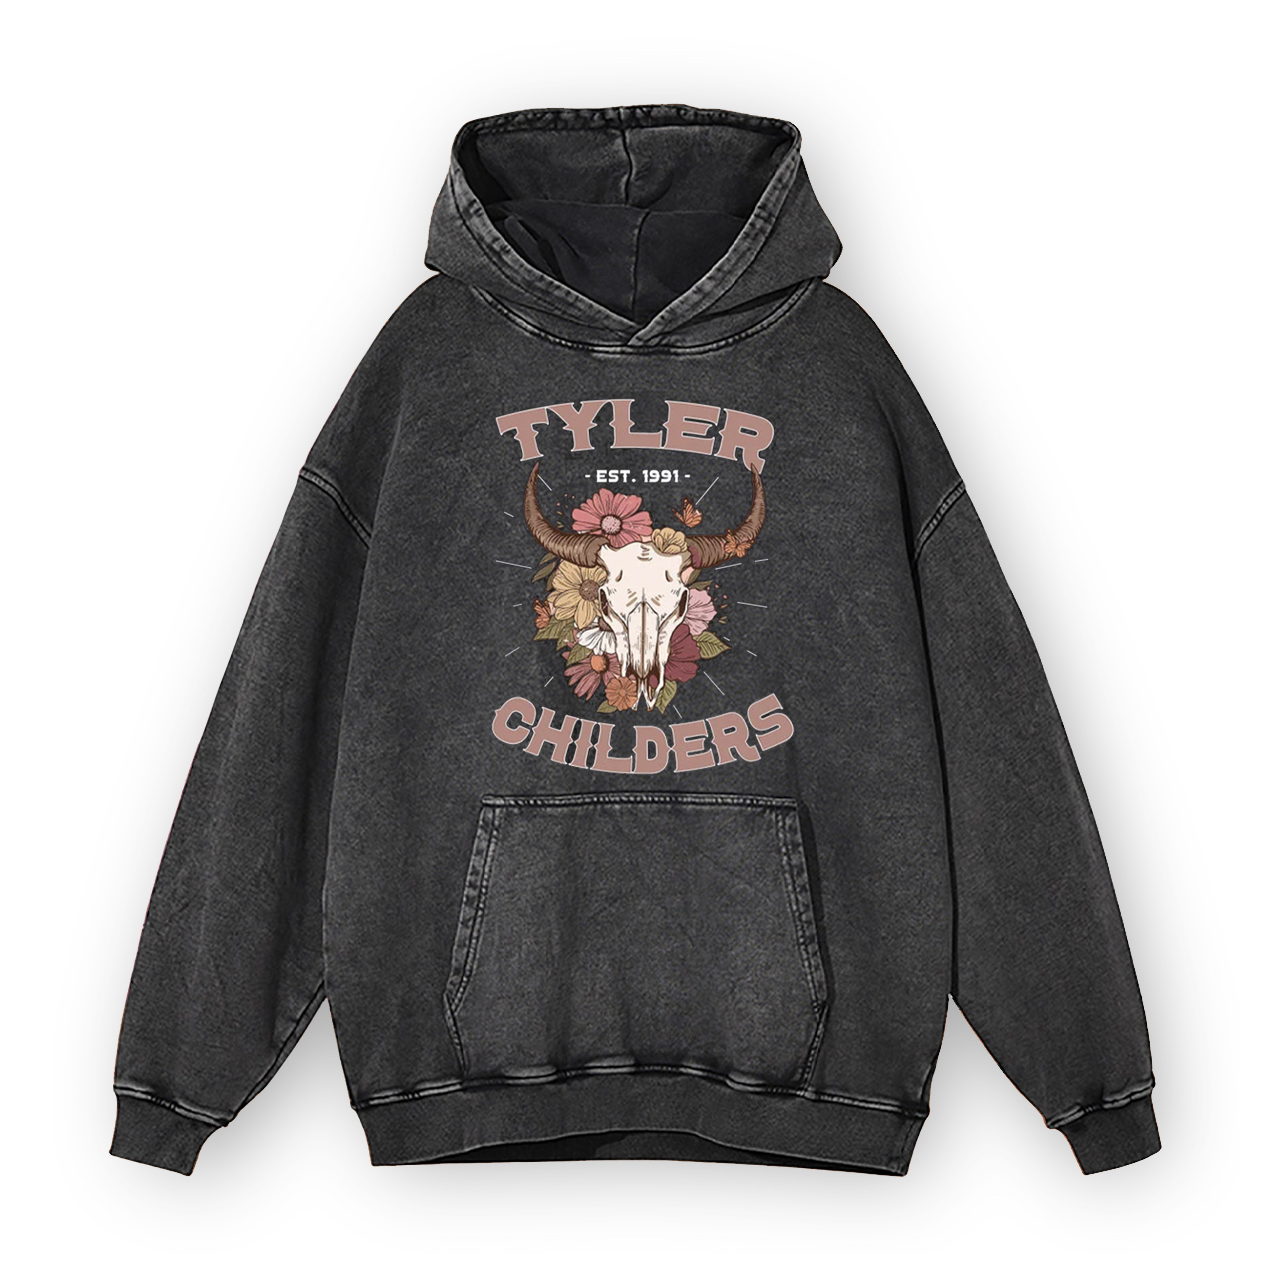 Vintage Tyler Childers Garment-Dye Hoodies